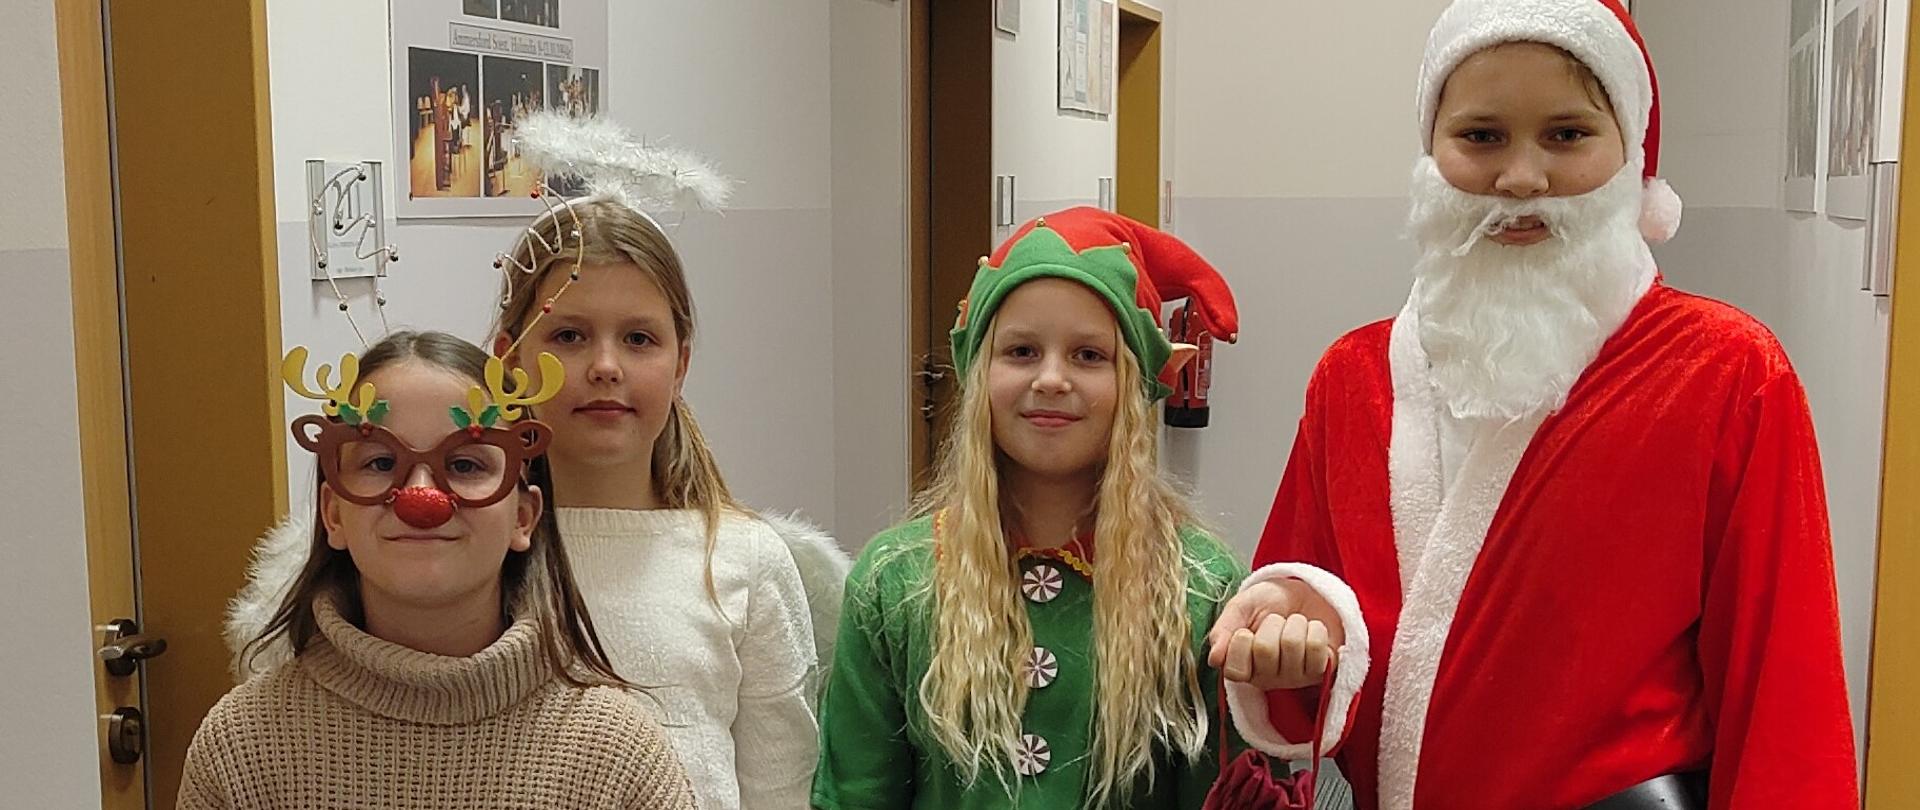 Zdjęcie 4 uczniów przebranych w stroje mikołajkowe - elf, anioł, renifer i Mikołaj